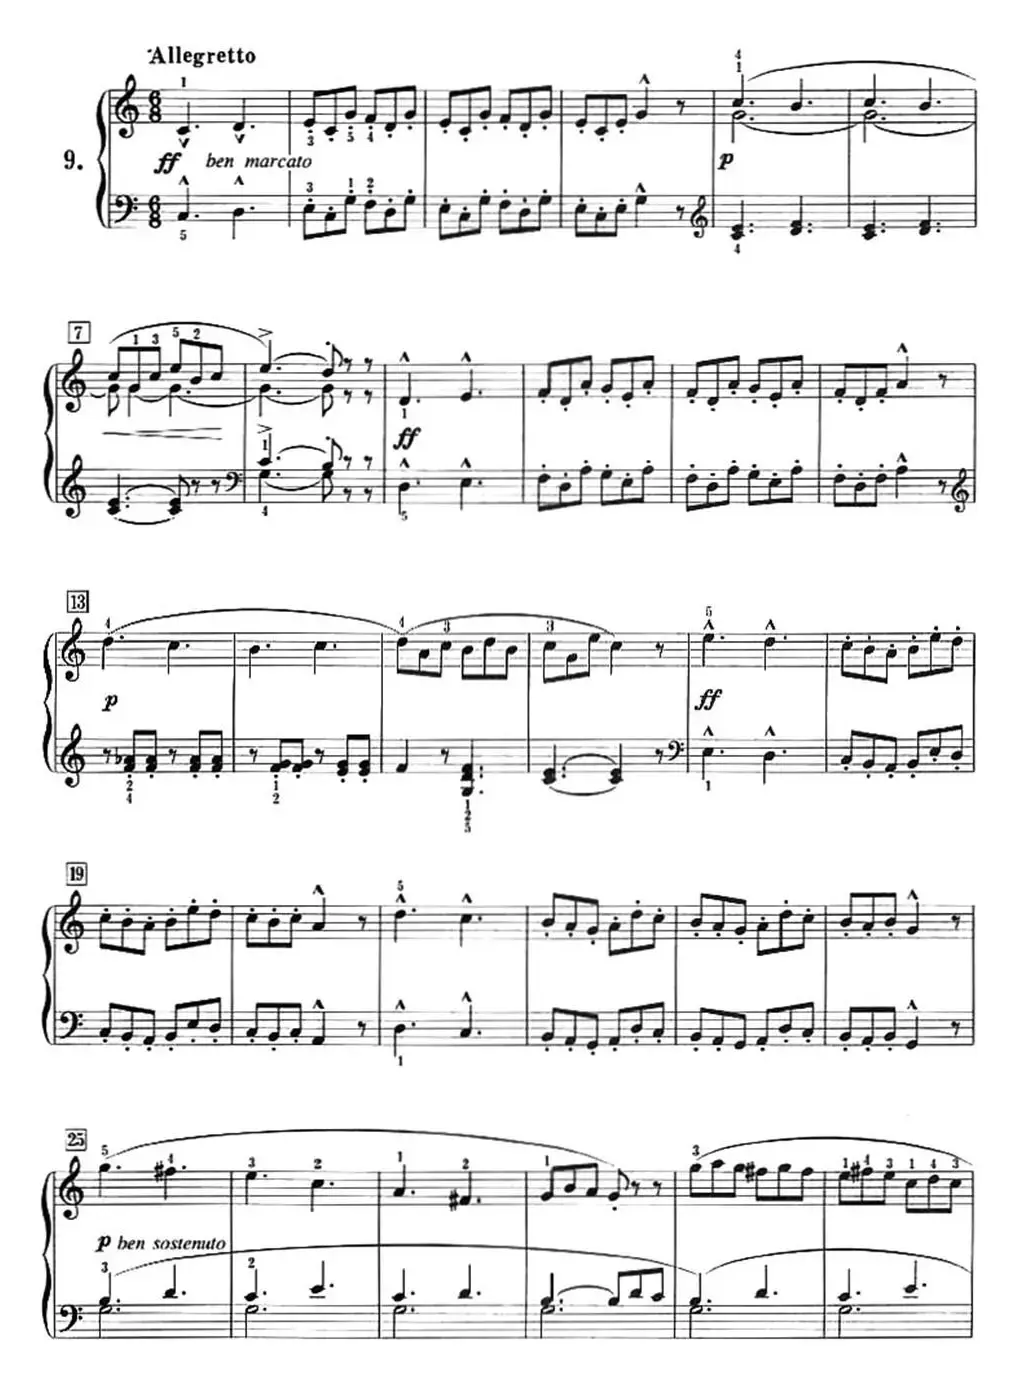 50首莱蒙钢琴练习曲 作品37（NO.9）